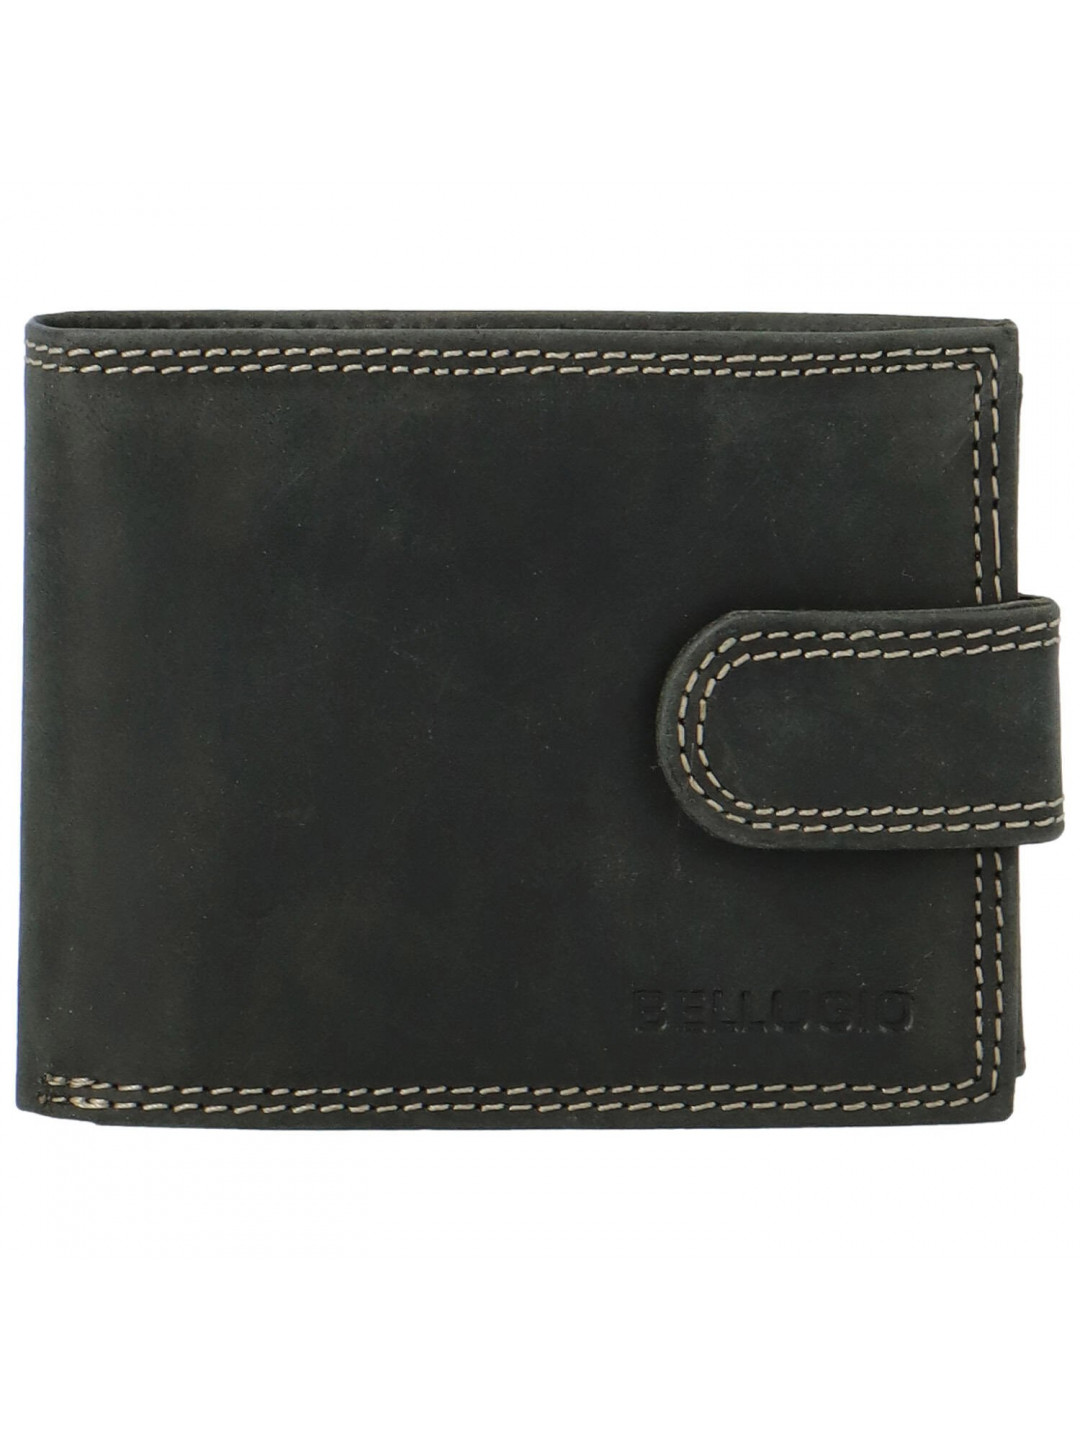 Pánská kožená peněženka černá – Bellugio Lokys